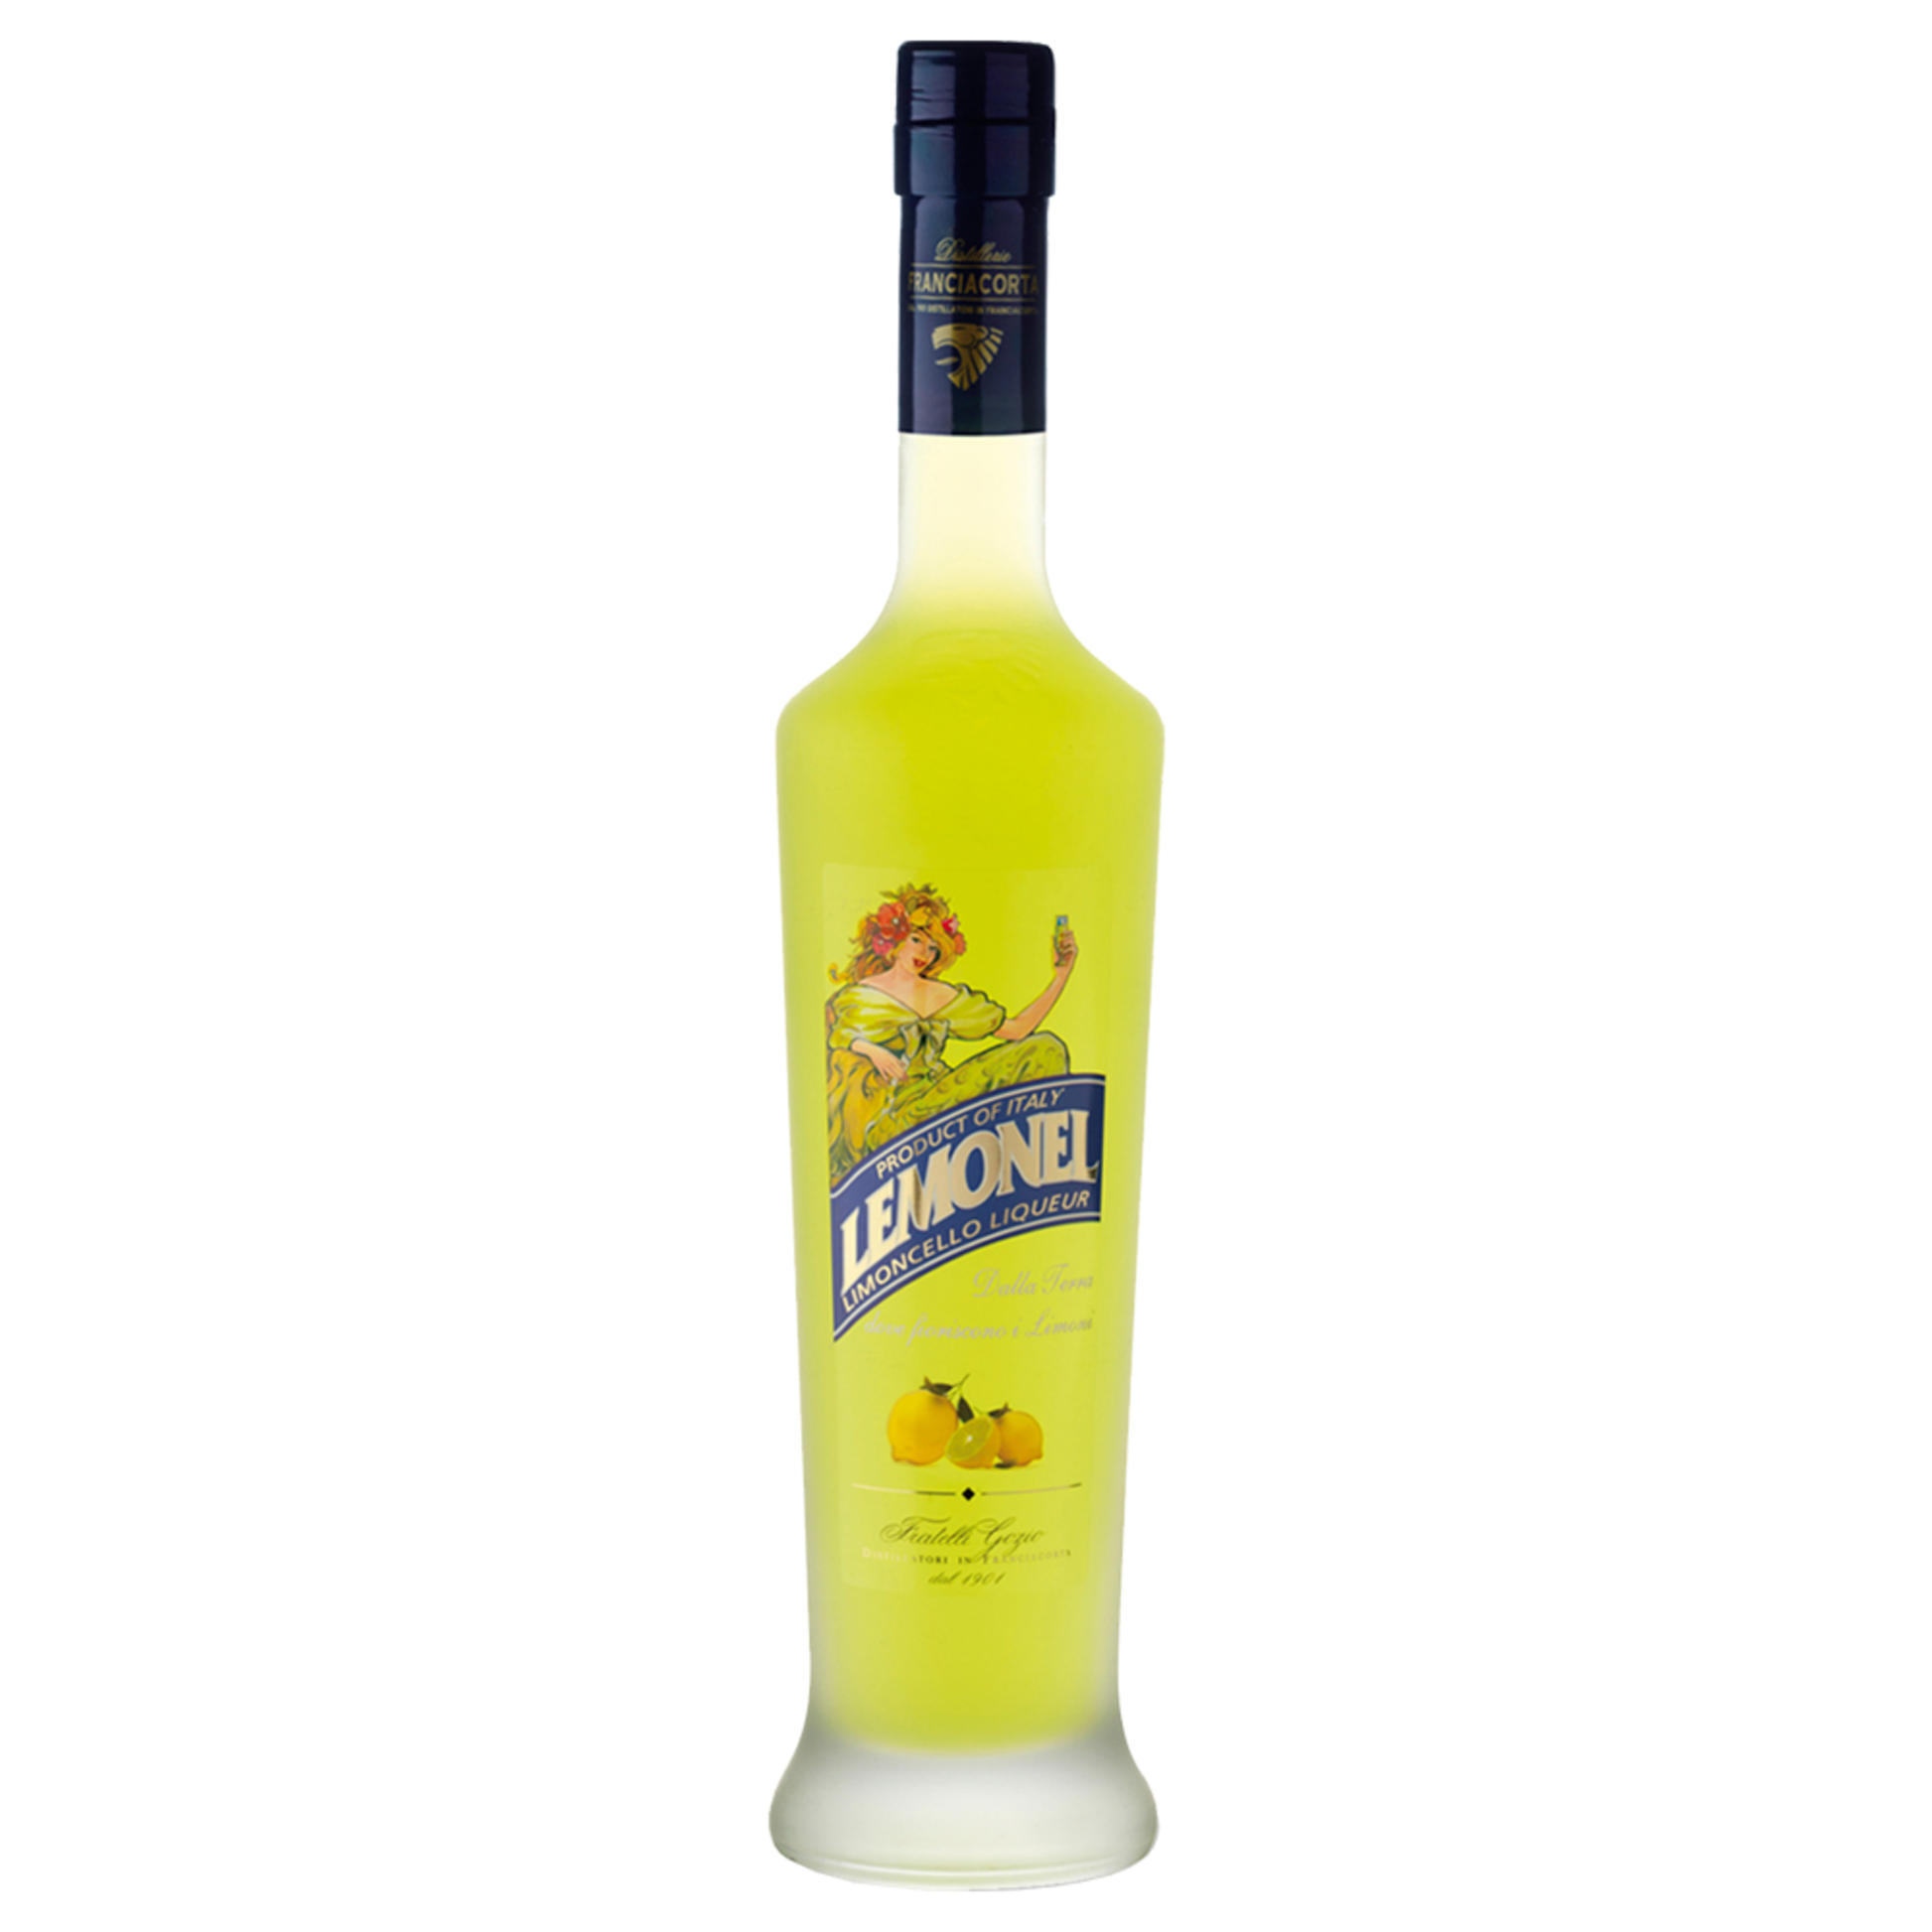 Lemonel Lemoncello Liqueur - Liquor Geeks